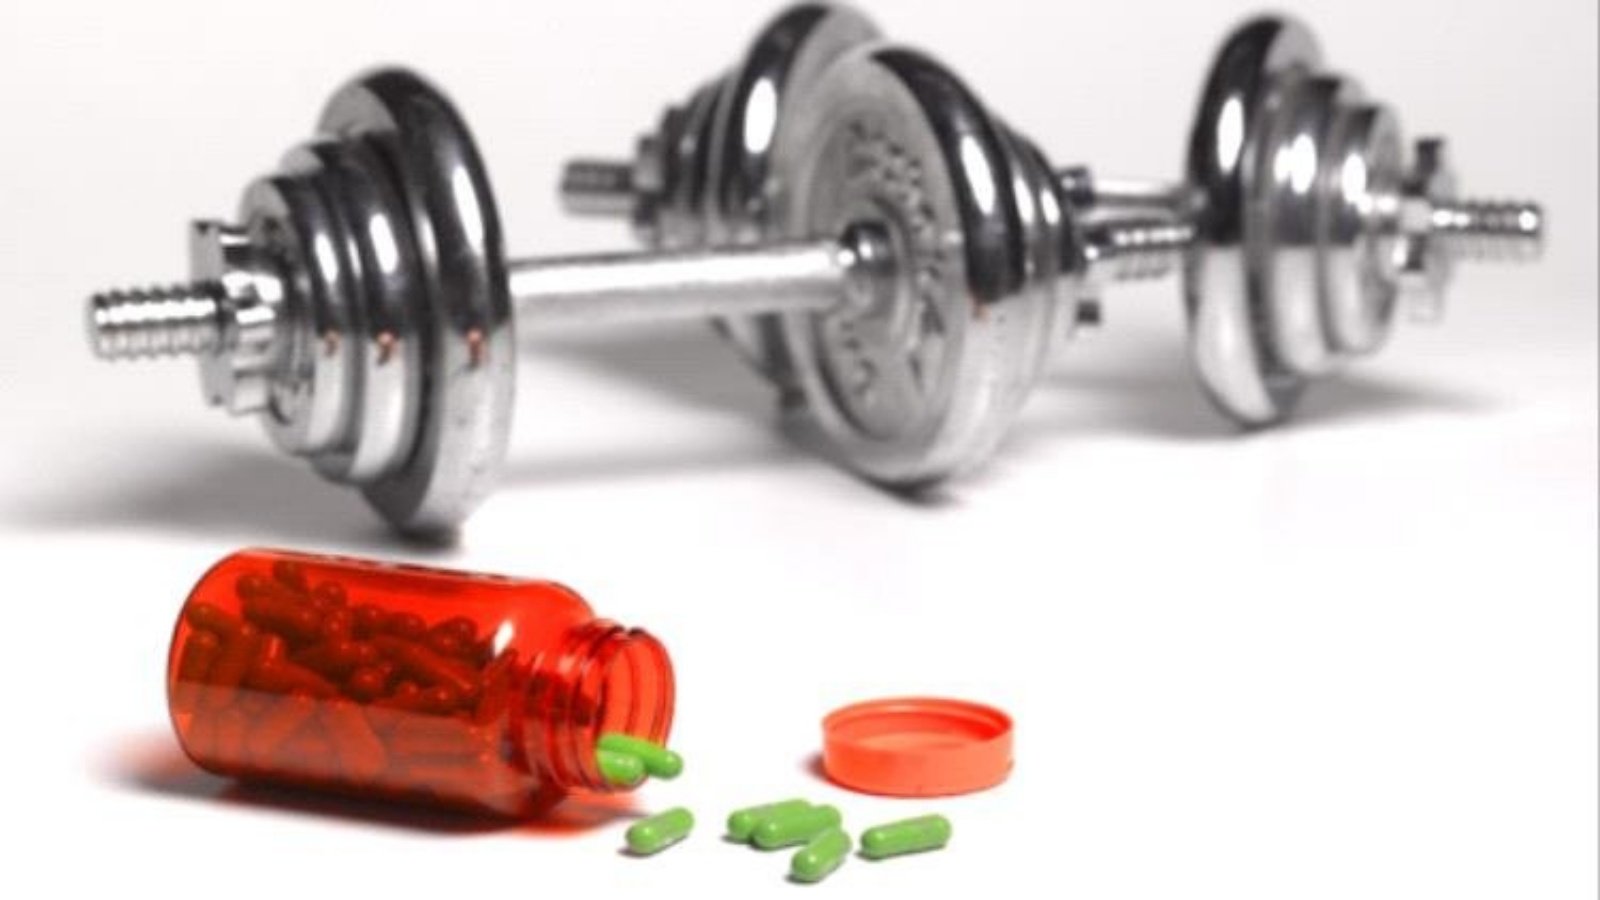 علماء في الولايات المتحدة تمكنوا من جمع بعض الفوائد الصحية للتمارين الرياضية في قرص دواء واحد